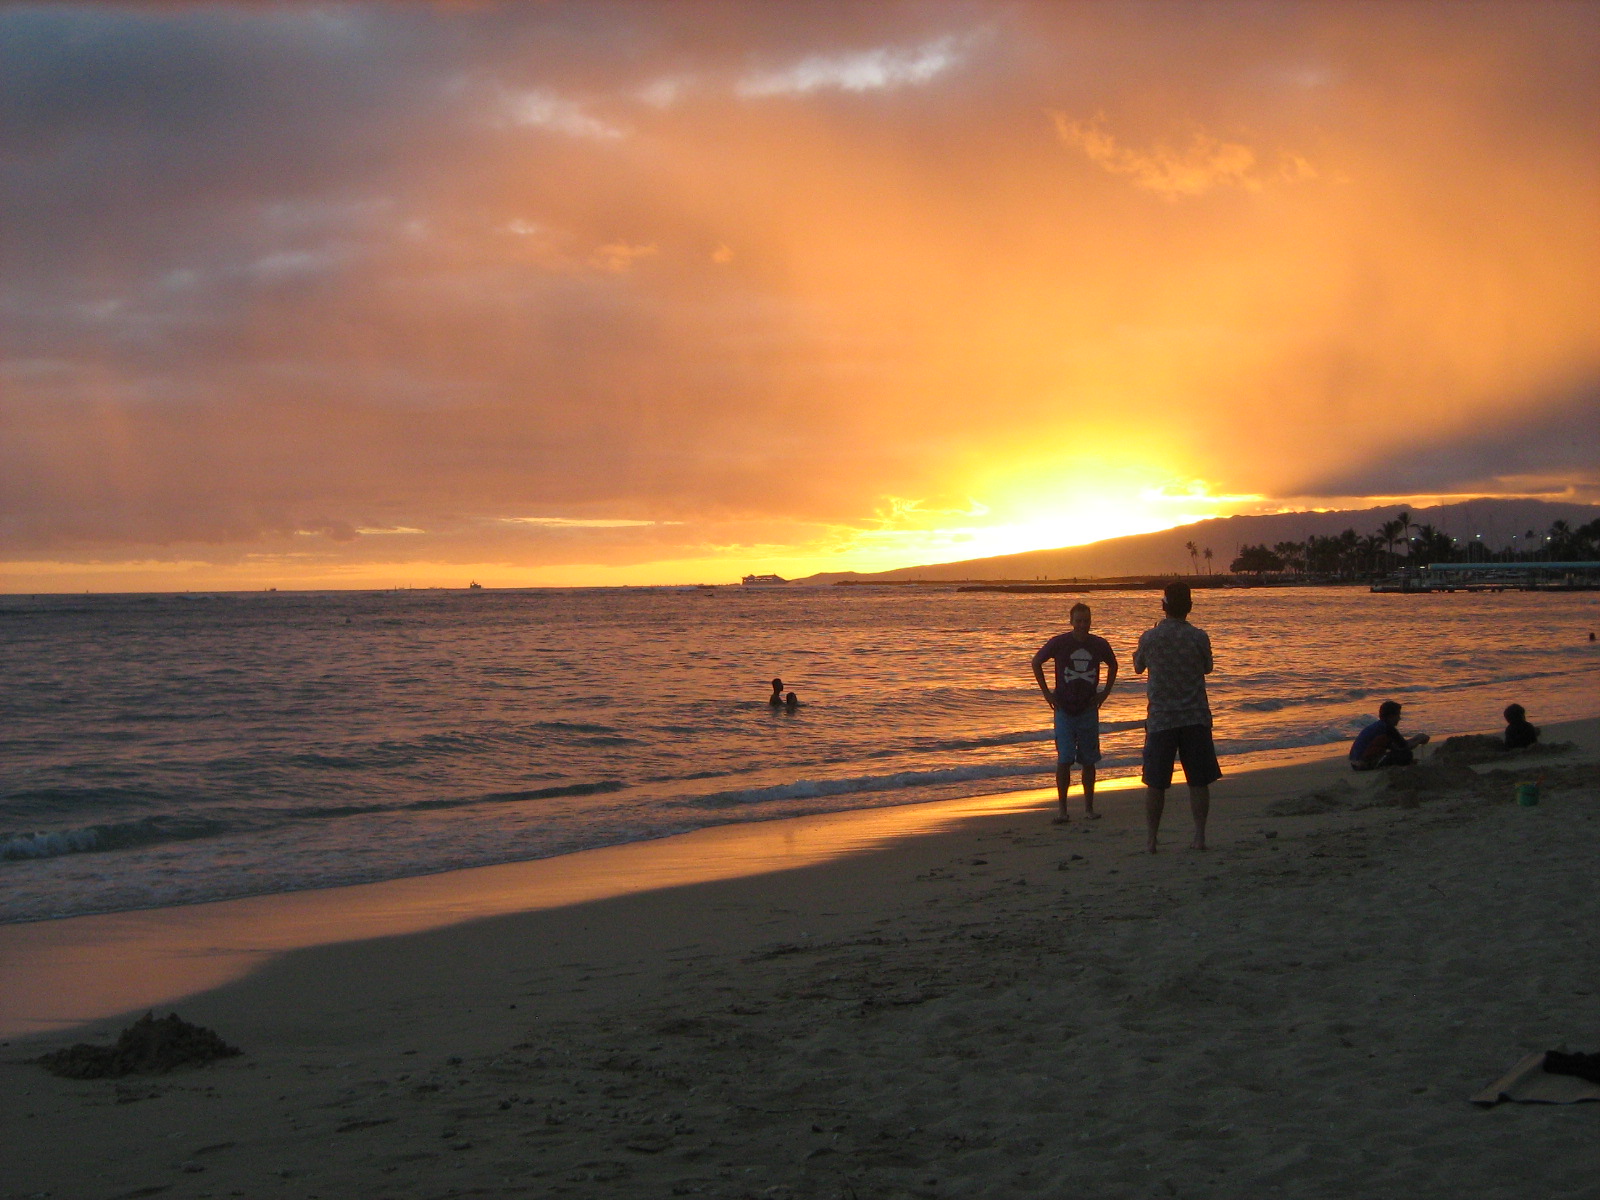  hawaii vacation 2010 pic59911 beautiful hawaiian sunset waikiki beach